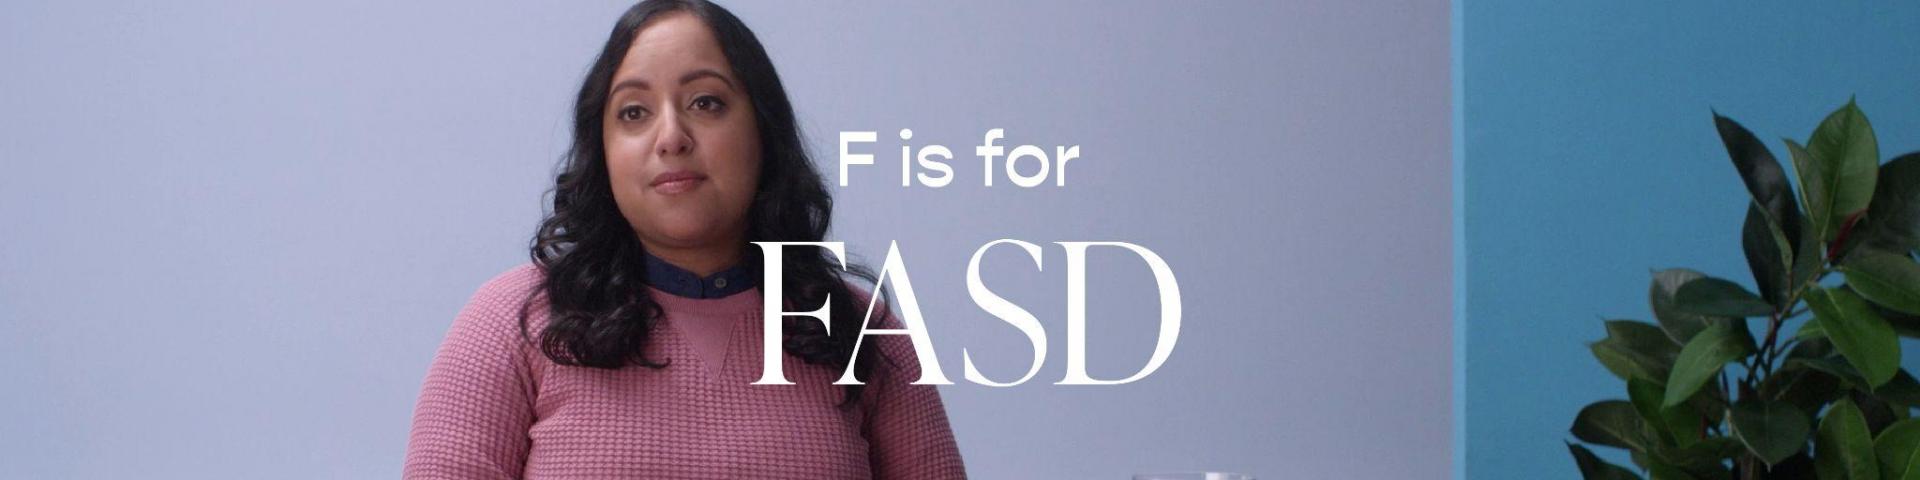 FASD Dictionary